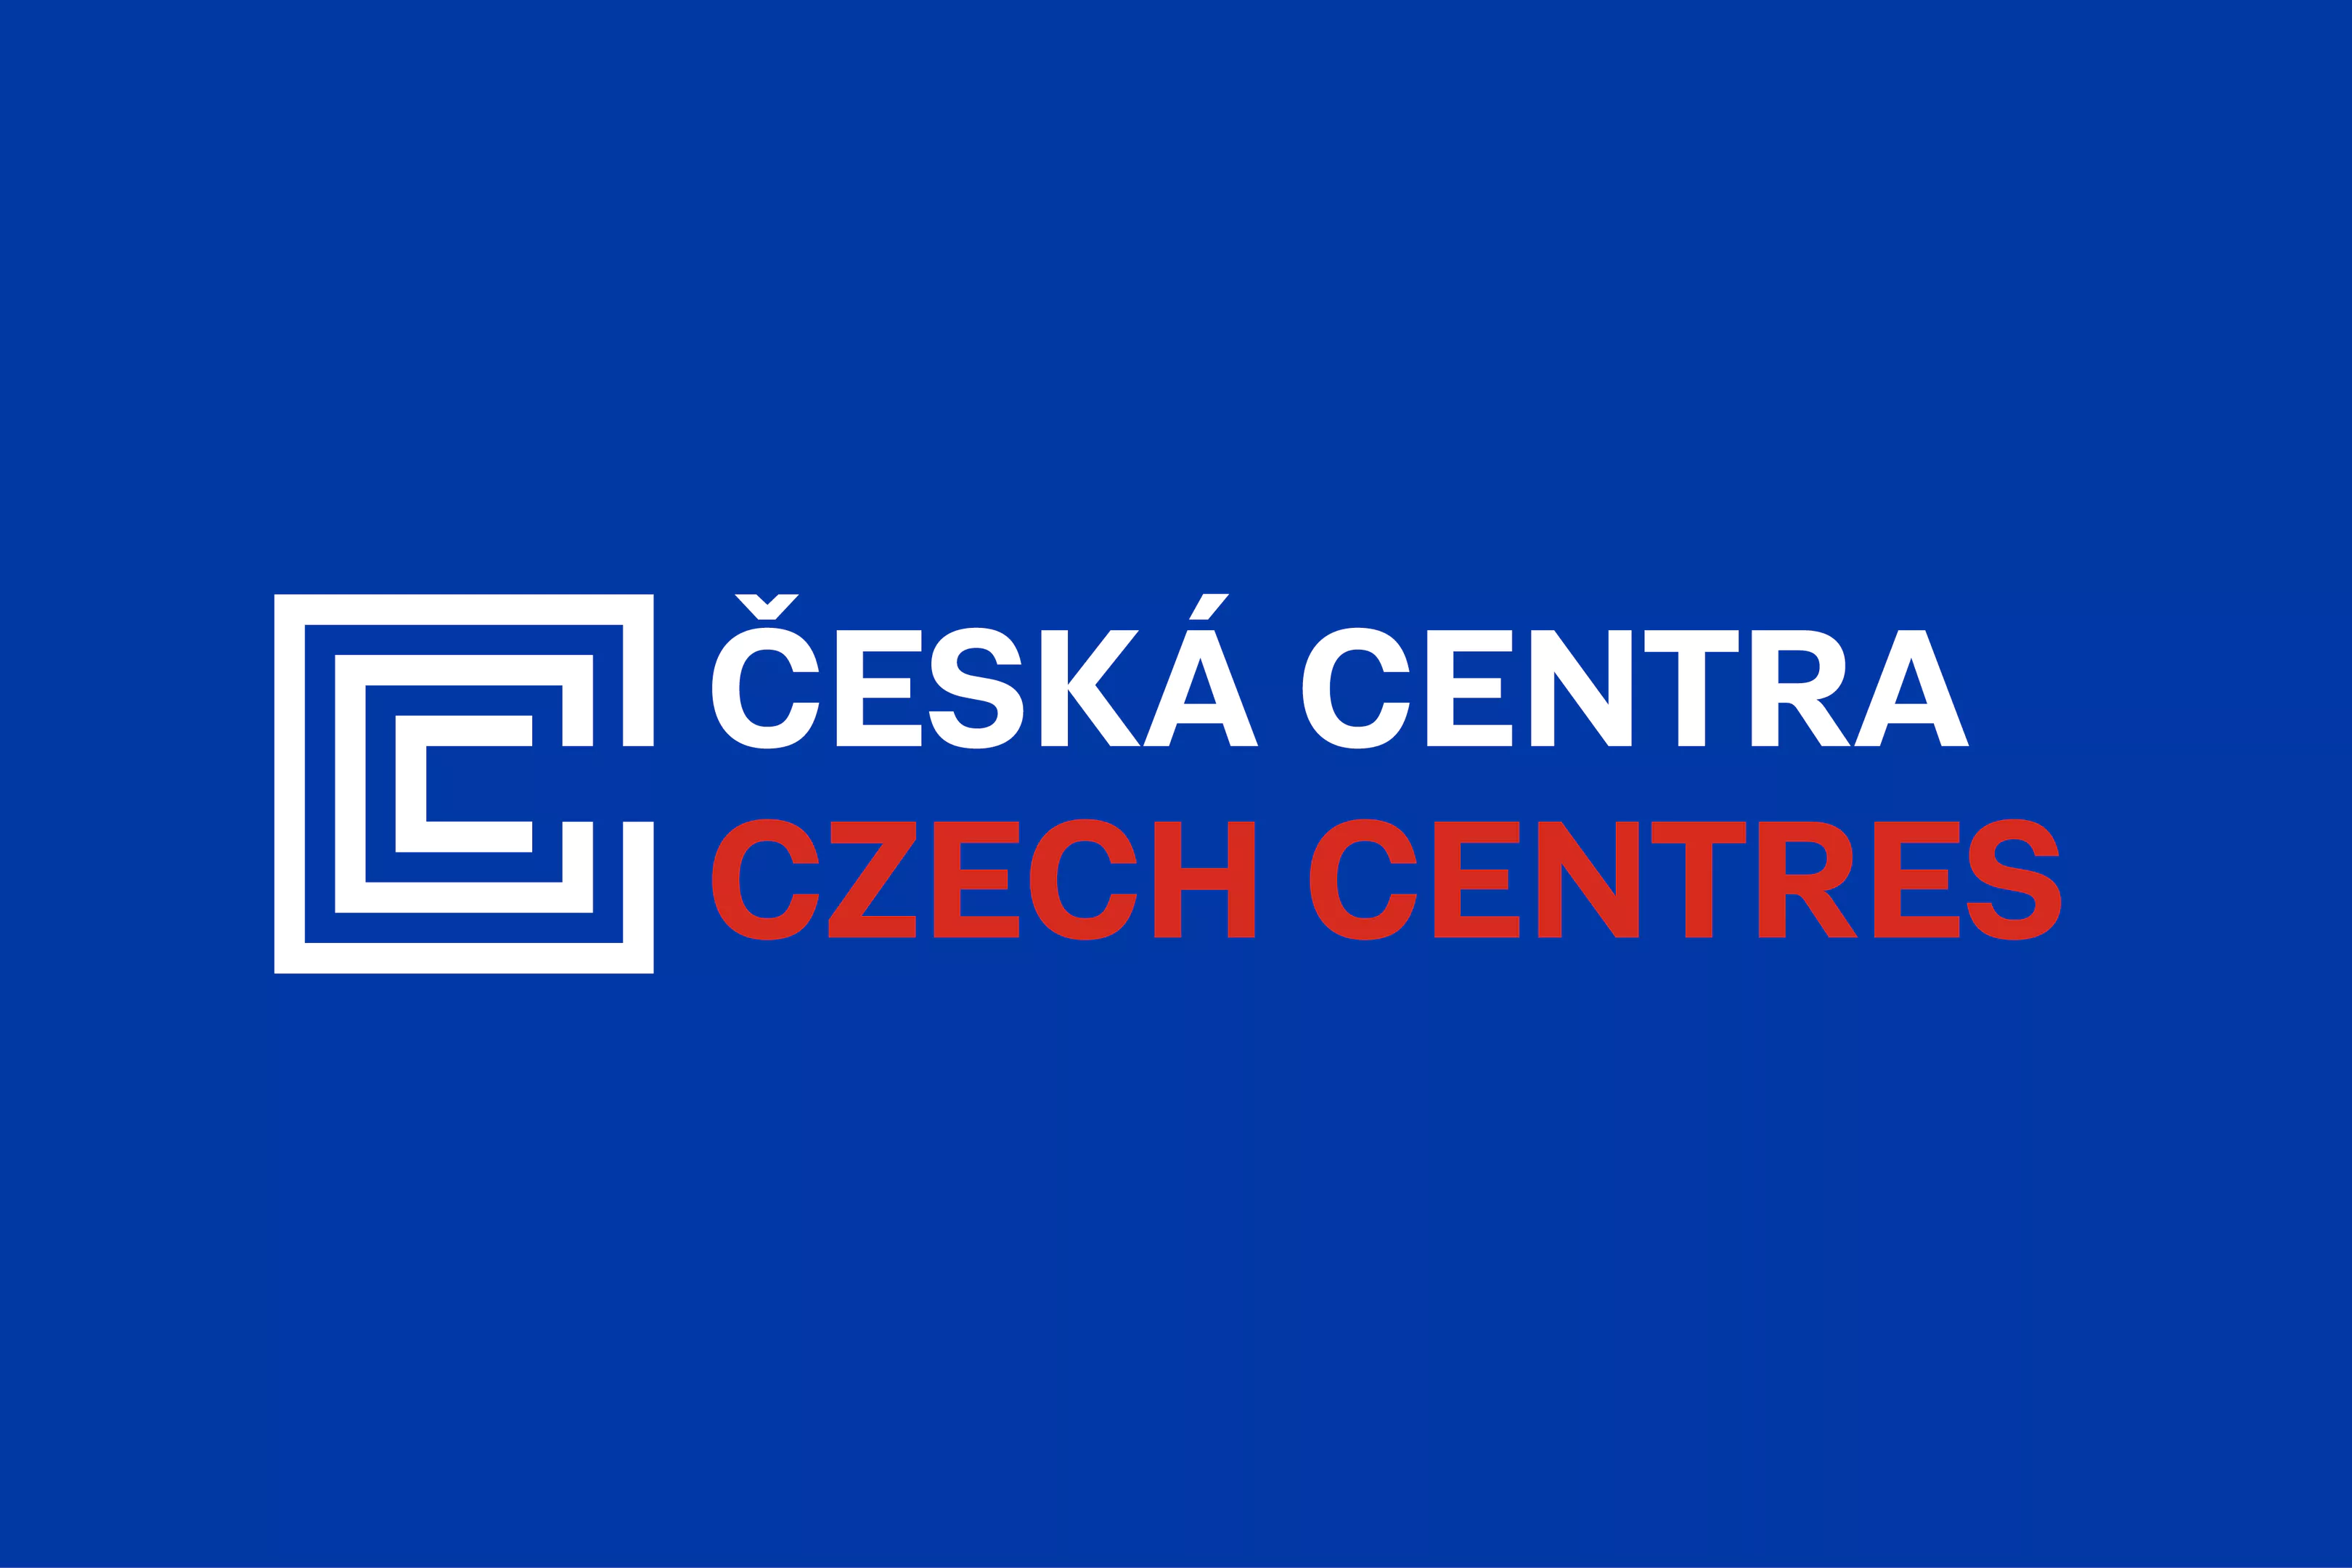 Czech centres